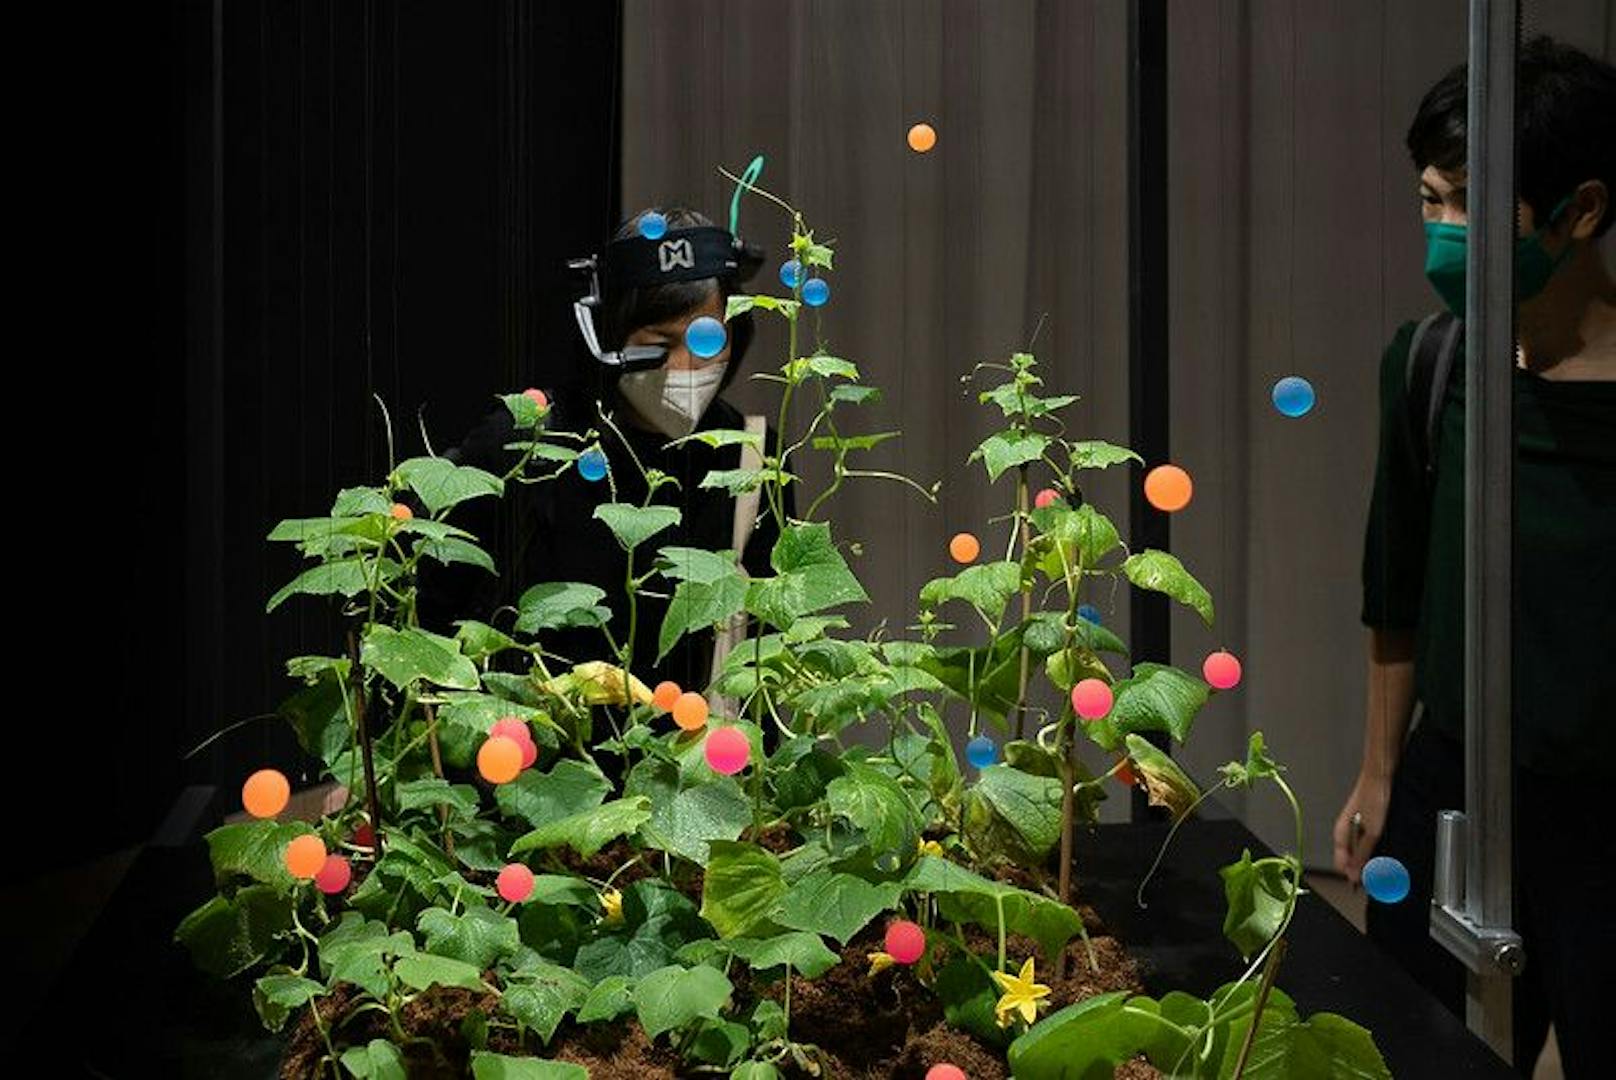 Gurkenpflanzen in Interaktion mit einem AI-Roboter